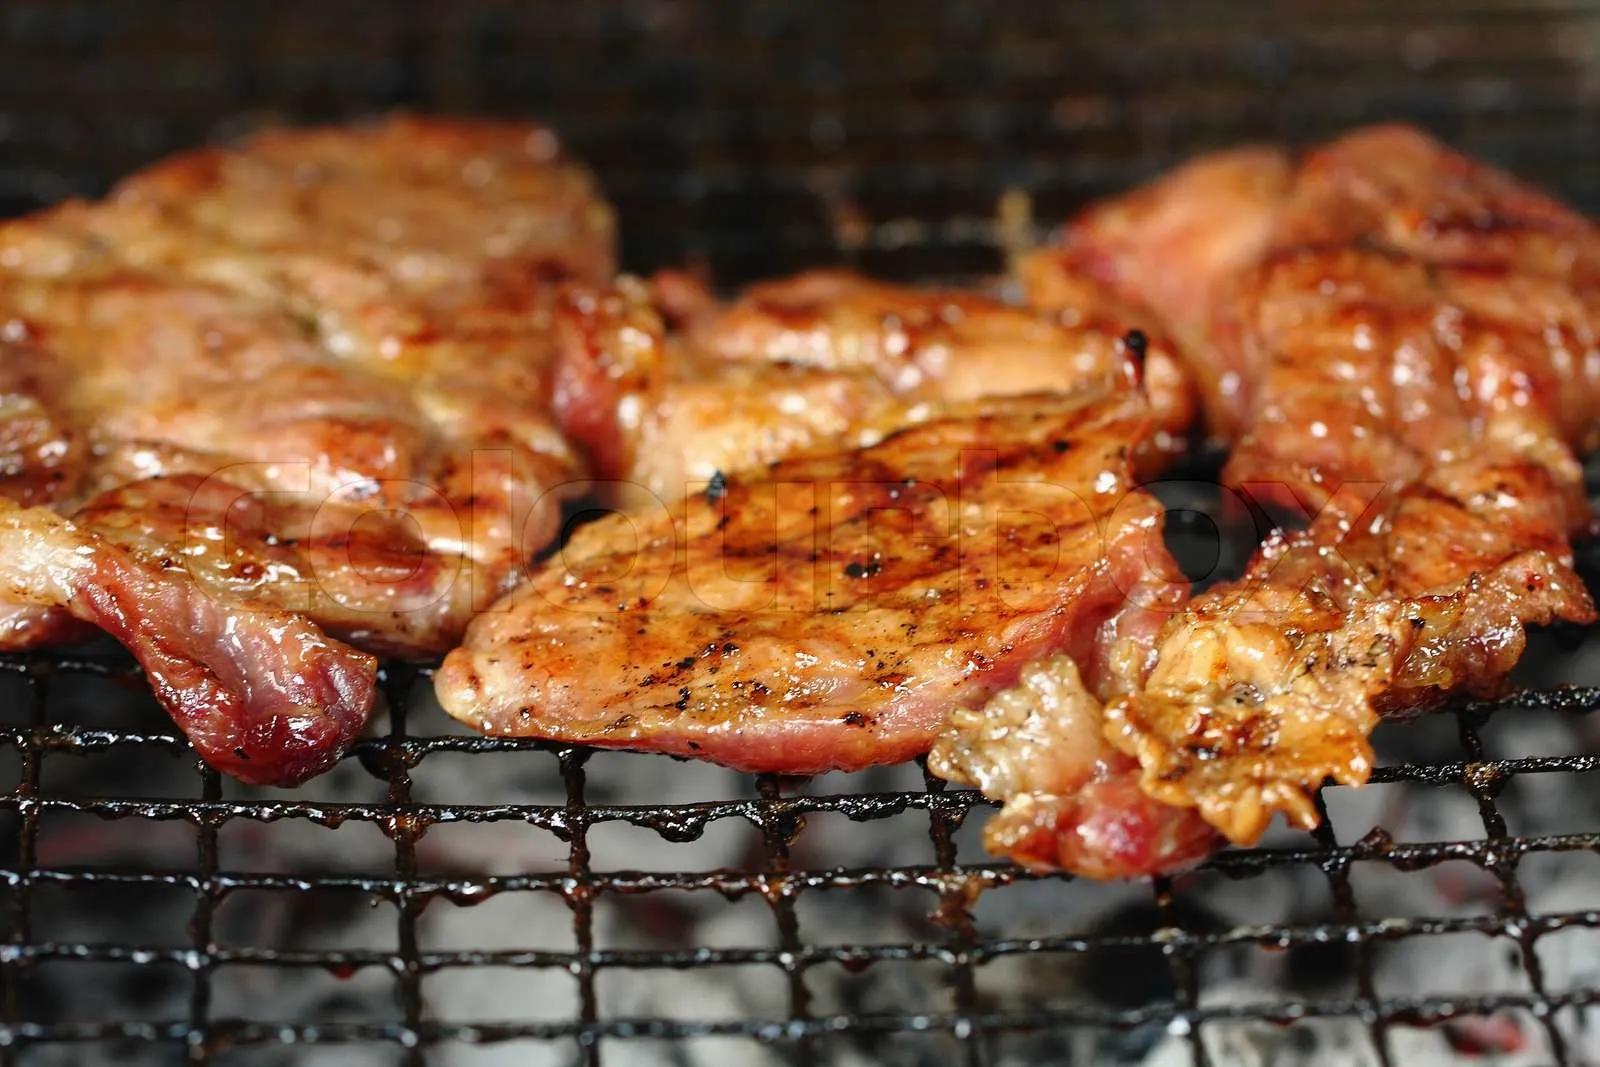 Gegrilltes Schweinefleisch war heiß BBQ | Stock Bild | Colourbox